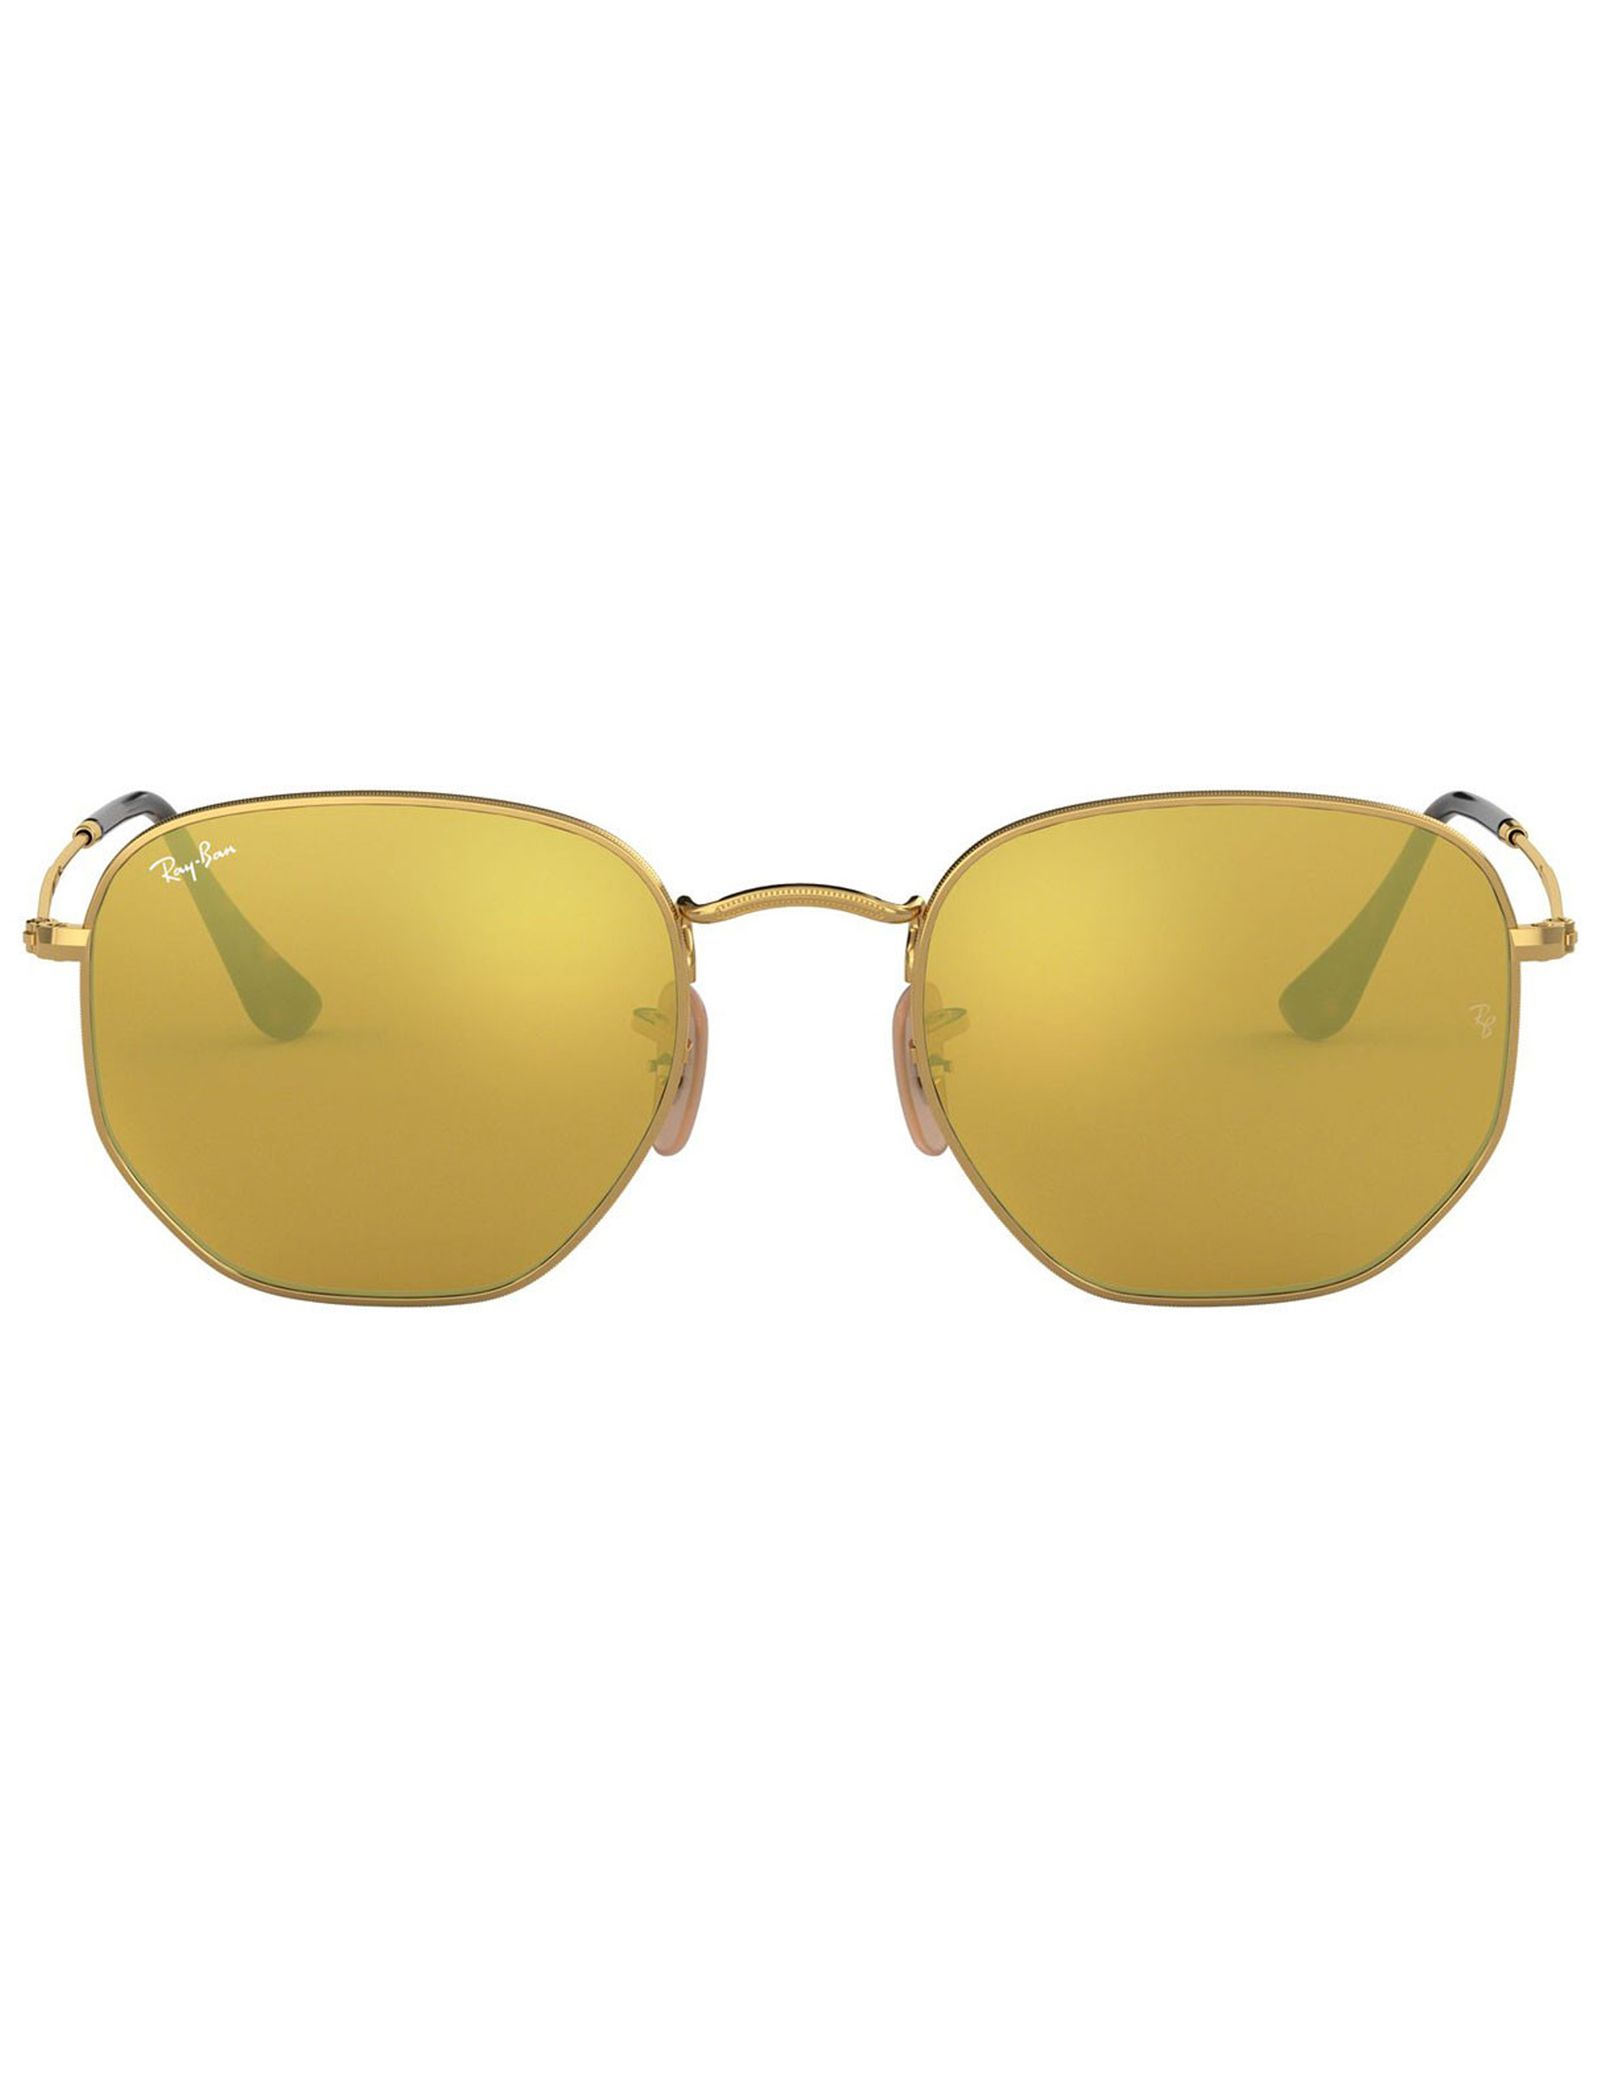 عینک آفتابی ری بن مدل 3548-001/93-51 - طلایی - 2